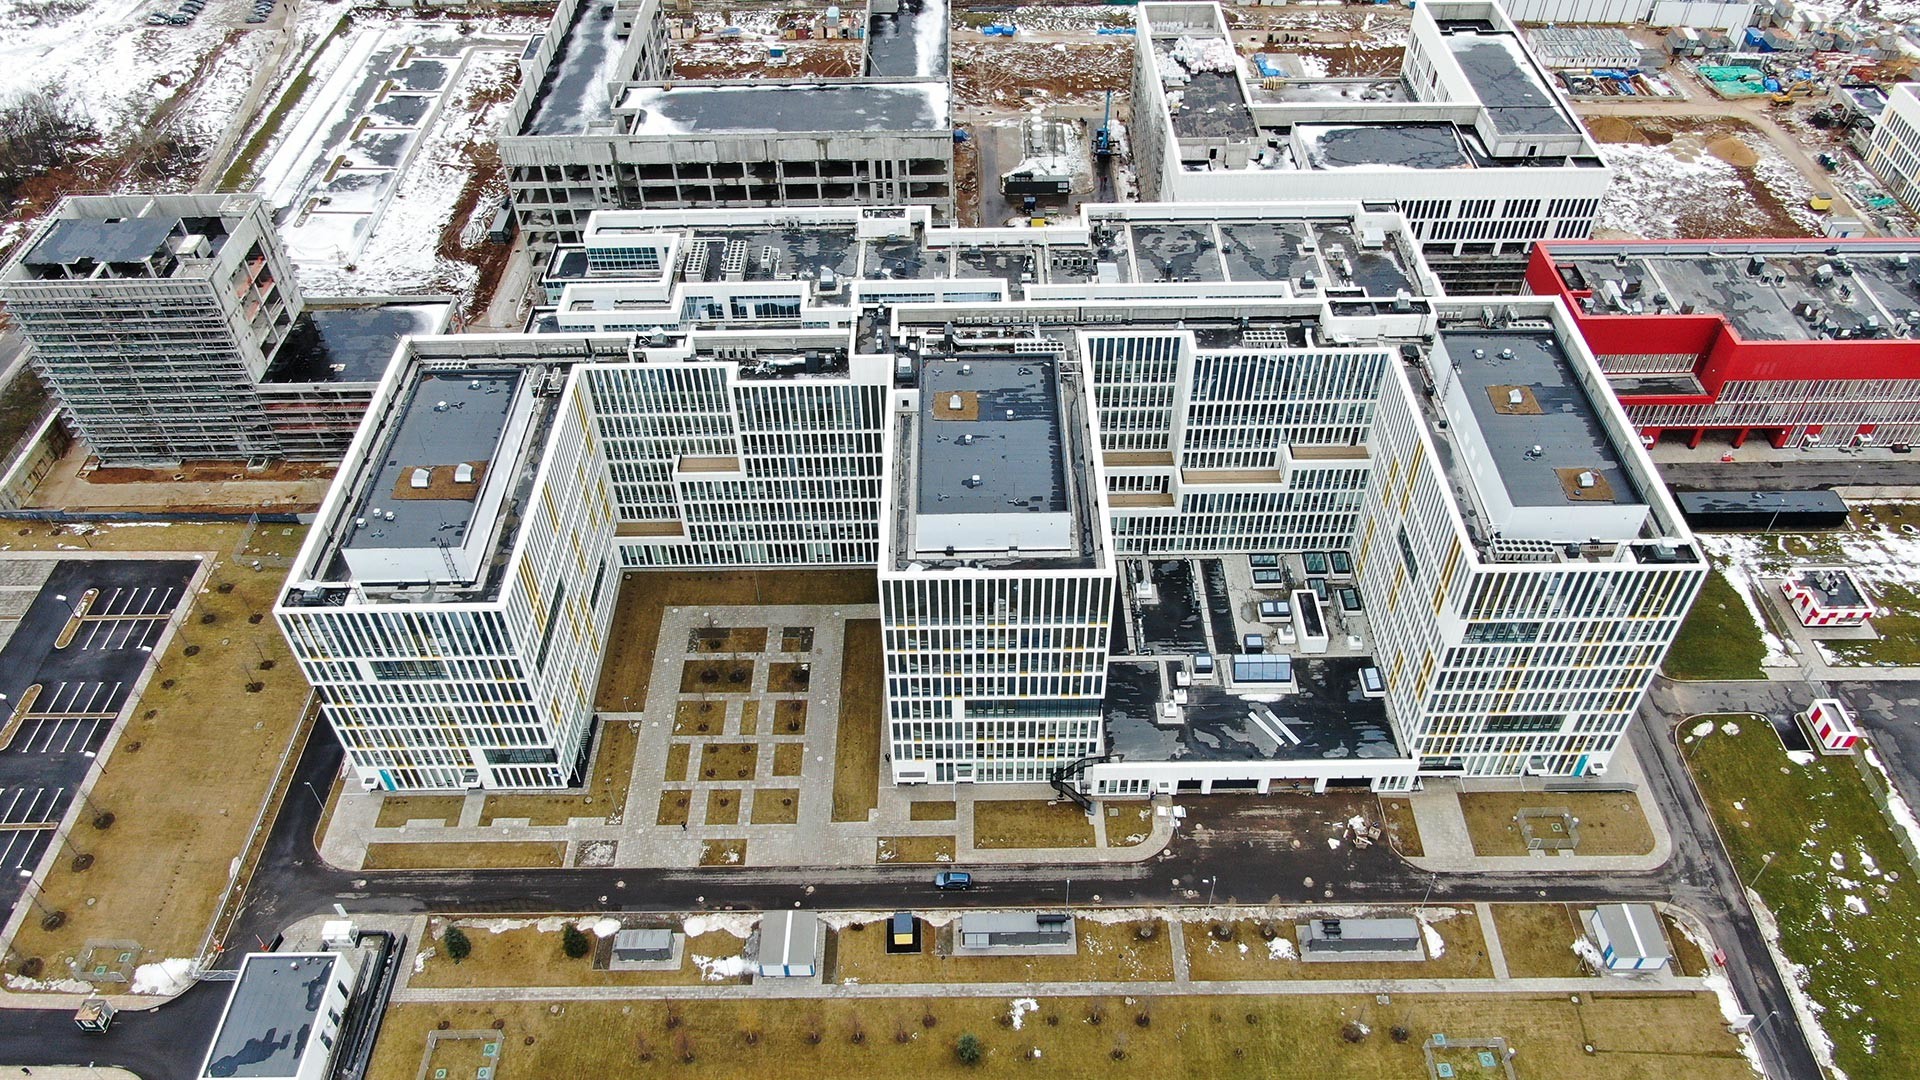 здание больницы коммунарки в москве